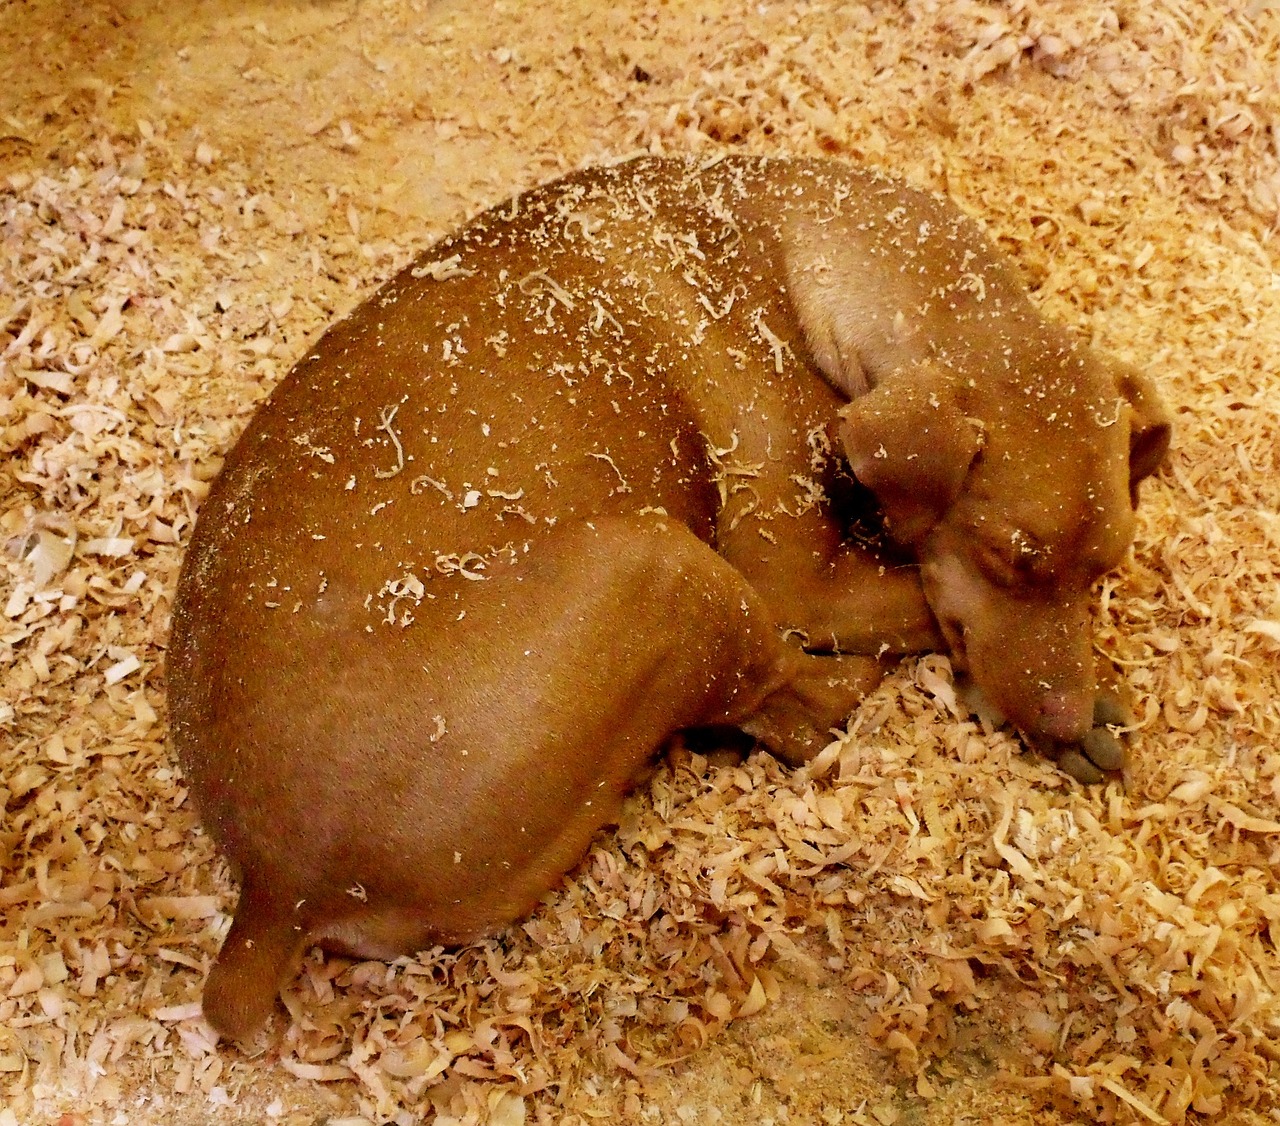 dog sleeping on a floor of sawdust.